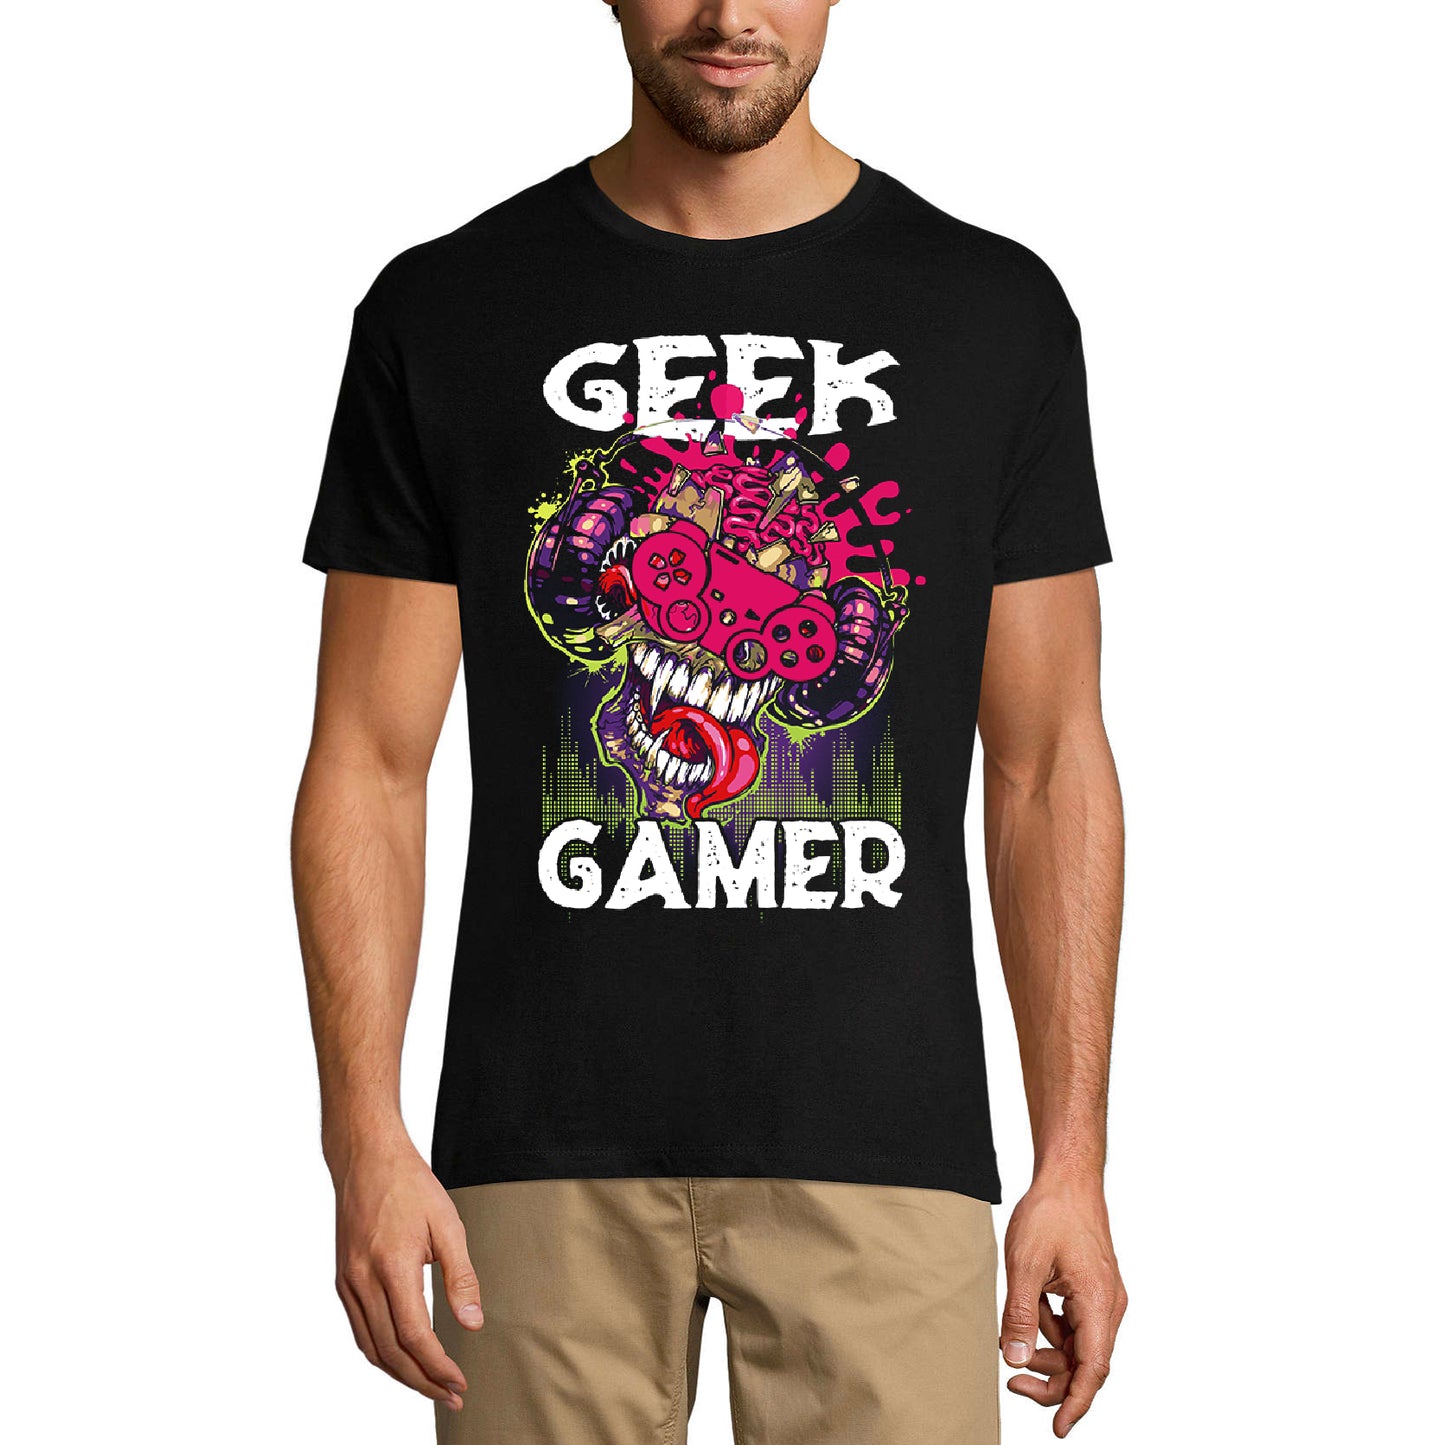 ULTRABASIC Graphic Men's T-Shirt Geek Gamer - Vintage Shirt - Gaming Apparel